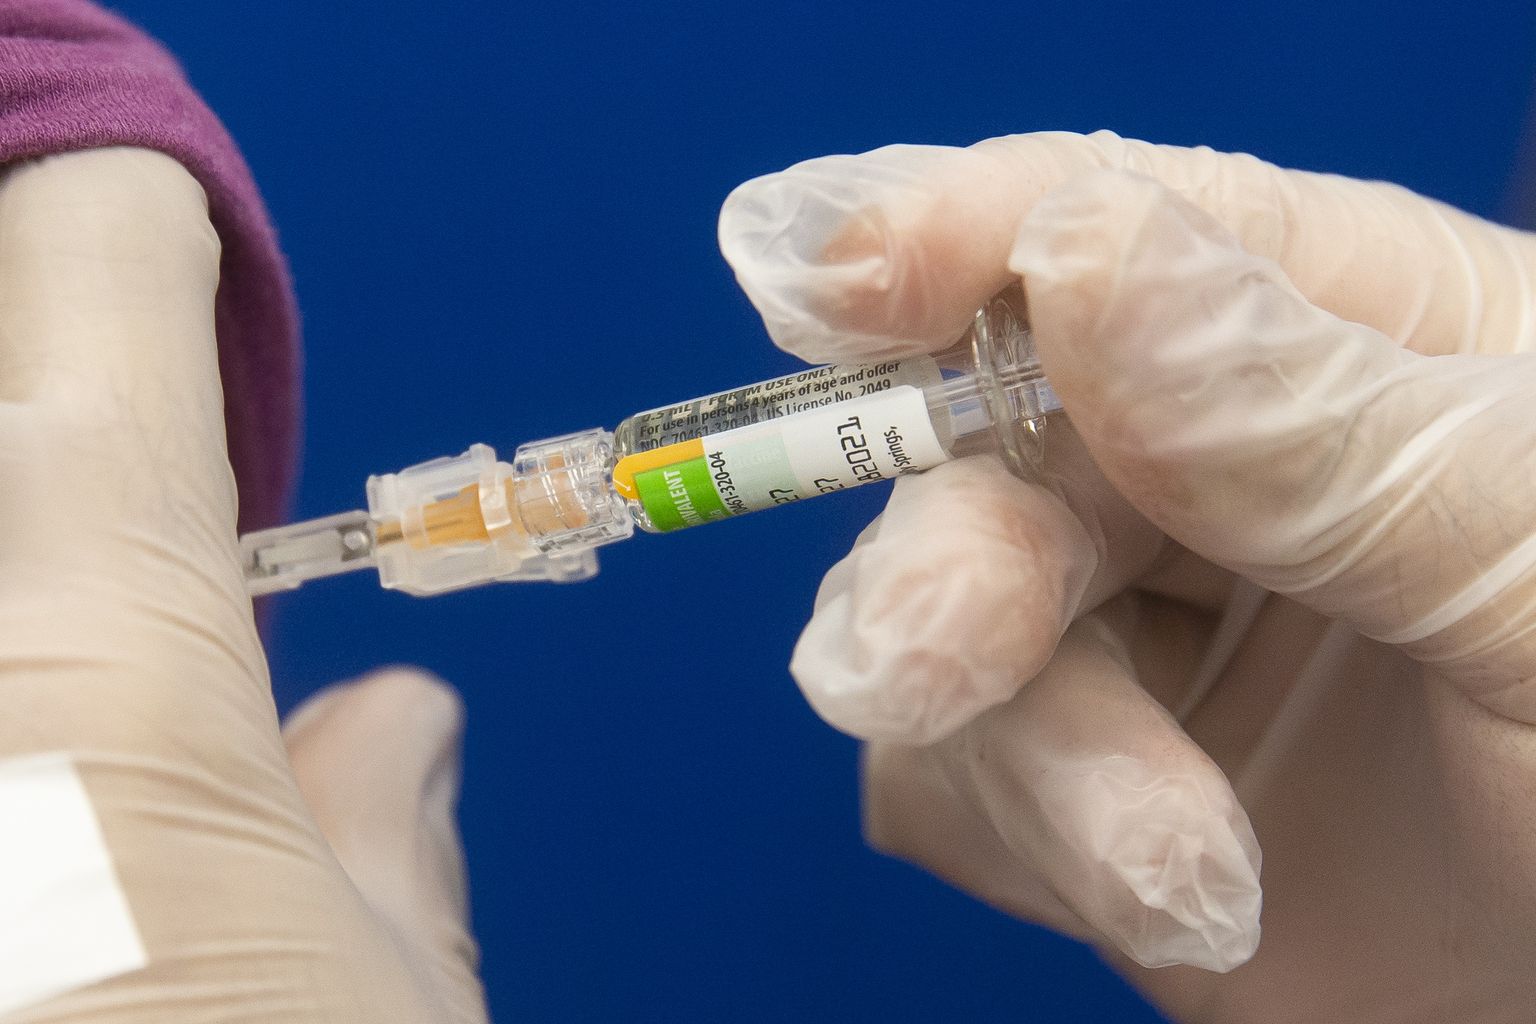 Gripivaktsiin hakkab tervetel inimestel mõjuma kümne kuni 14 päeva pärast süstimist ja selle mõju kestab kuni aasta.  Riskigruppi kuuluvad lapsed, rasedad, eakad ja nõrga immuunsüsteemiga inimesed. Eestis vajab igal aastal gripitüsistuste tõttu haiglaravi ligi 2000 inimest. Illustreerival pildil gripivaktsiini tegemine 17. septembril 2020 Washingtonis.